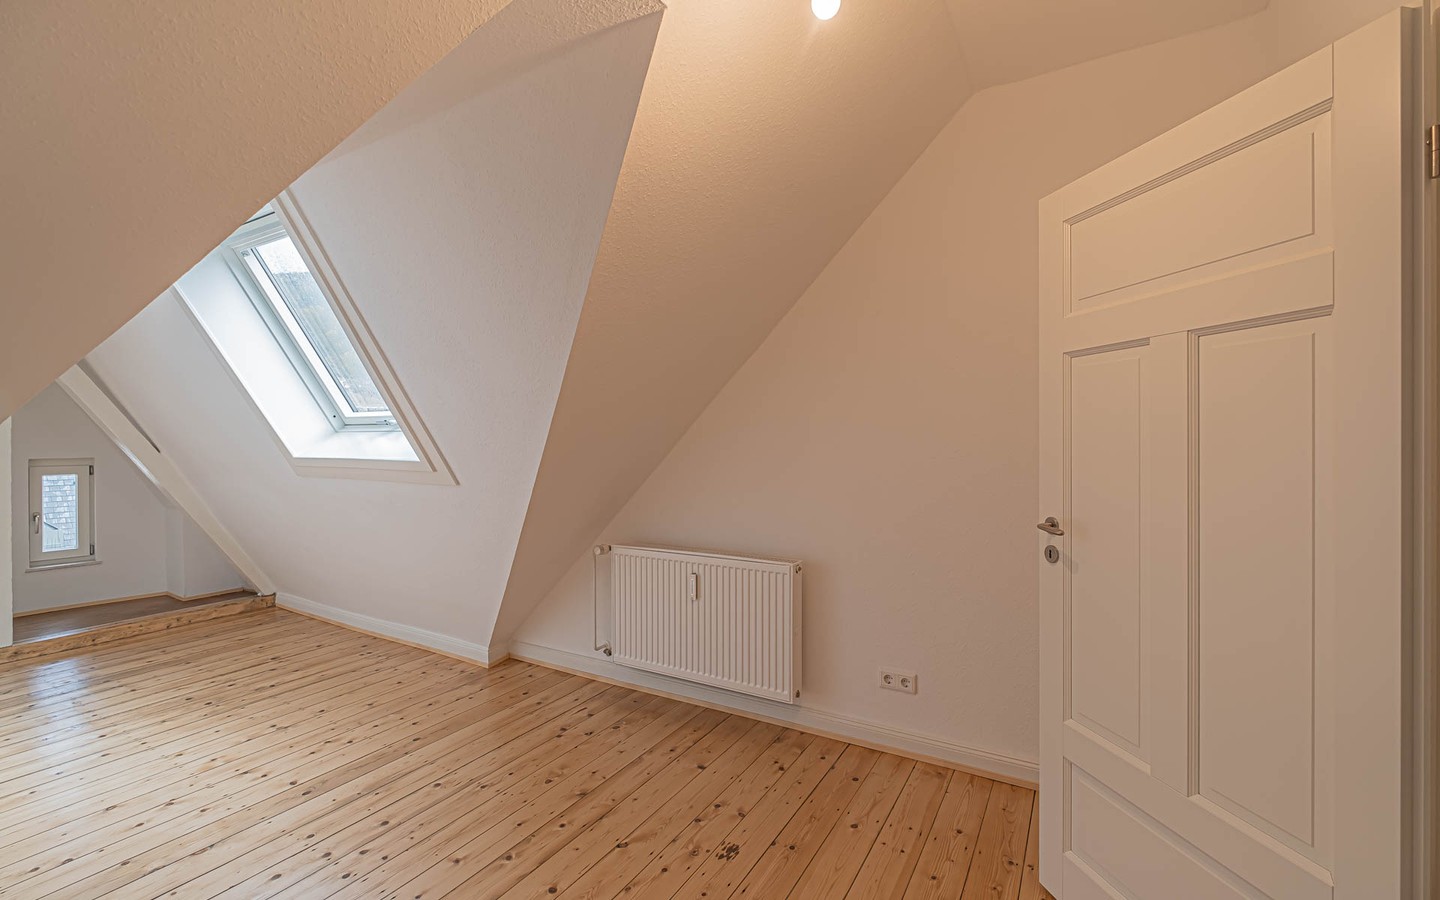 Zimmer "Kreativ" - Rarität – Dachgeschosswohnung mit Schlossblick -
 Ideal für kreative Singles oder Paare